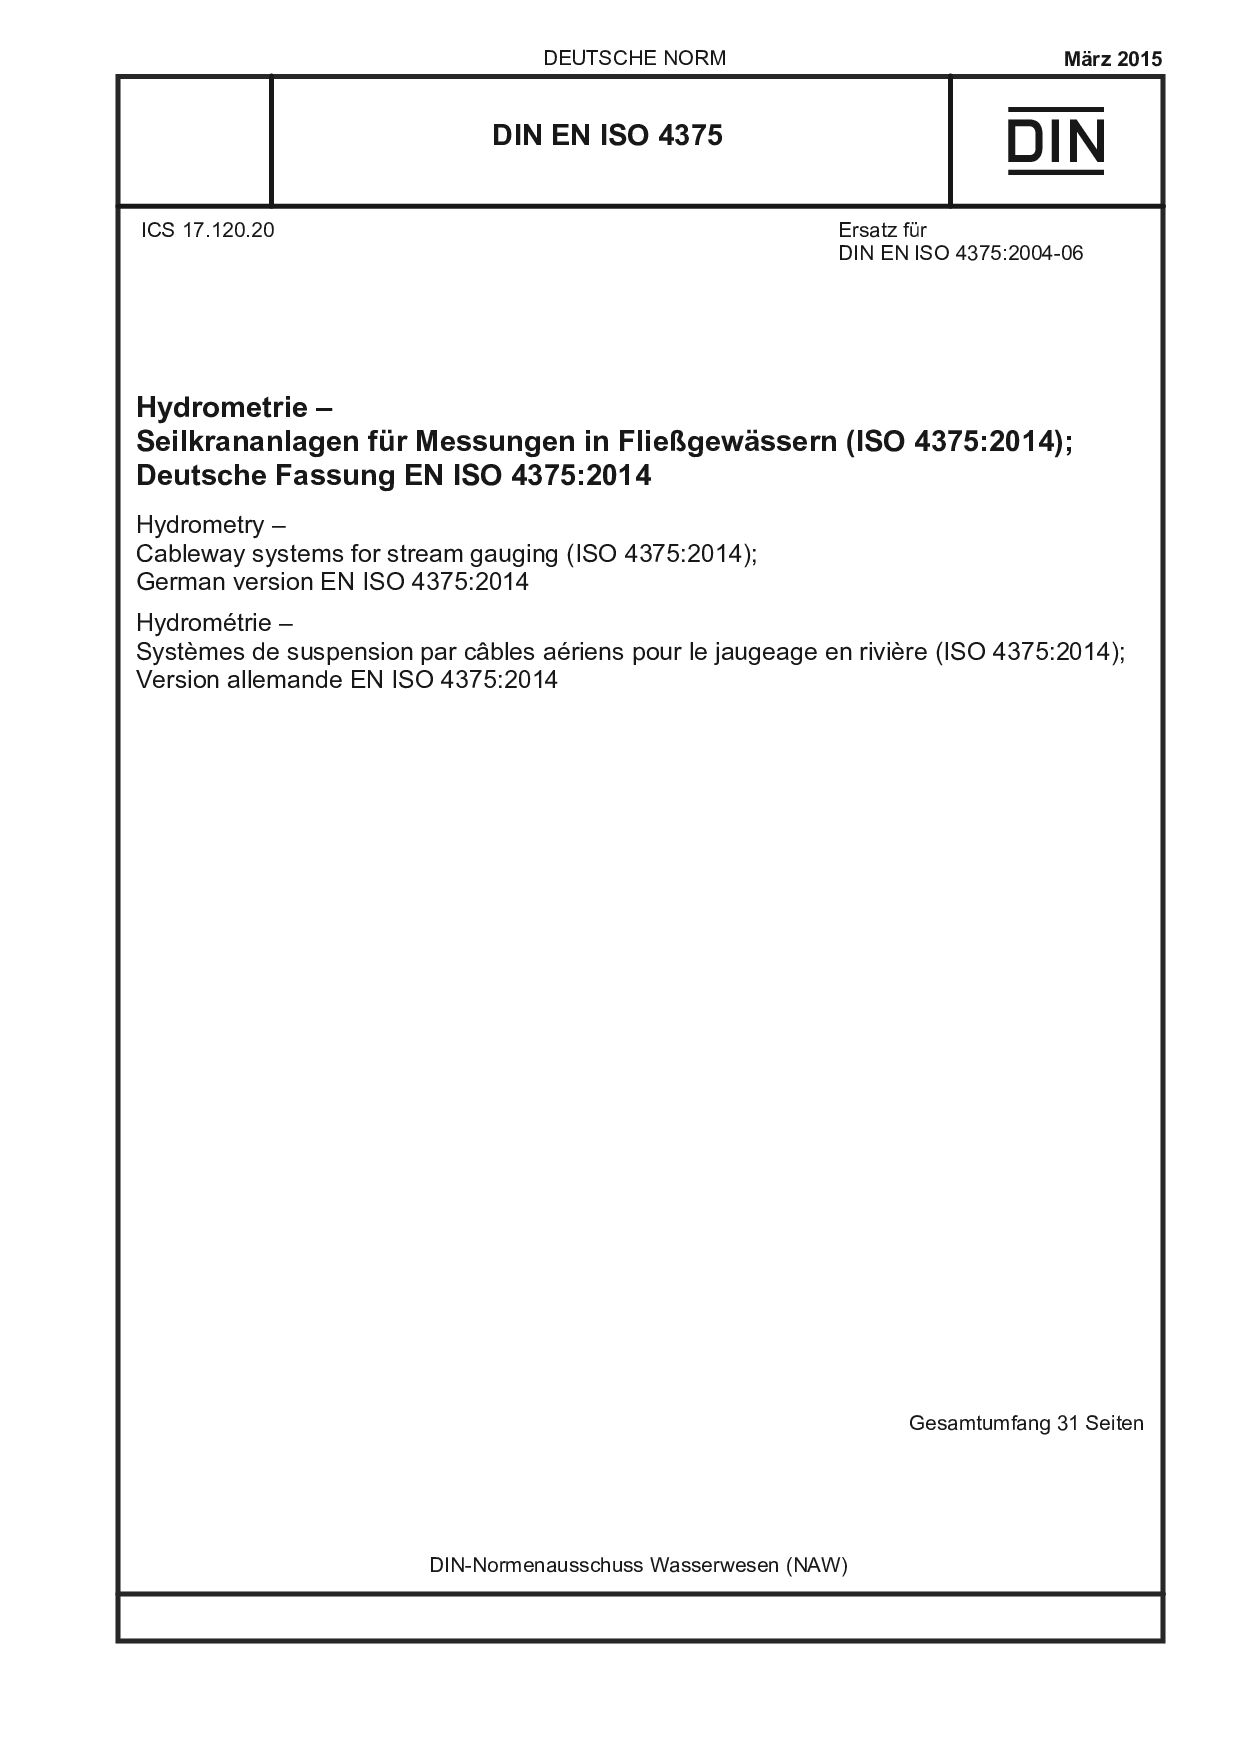 DIN EN ISO 4375:2015